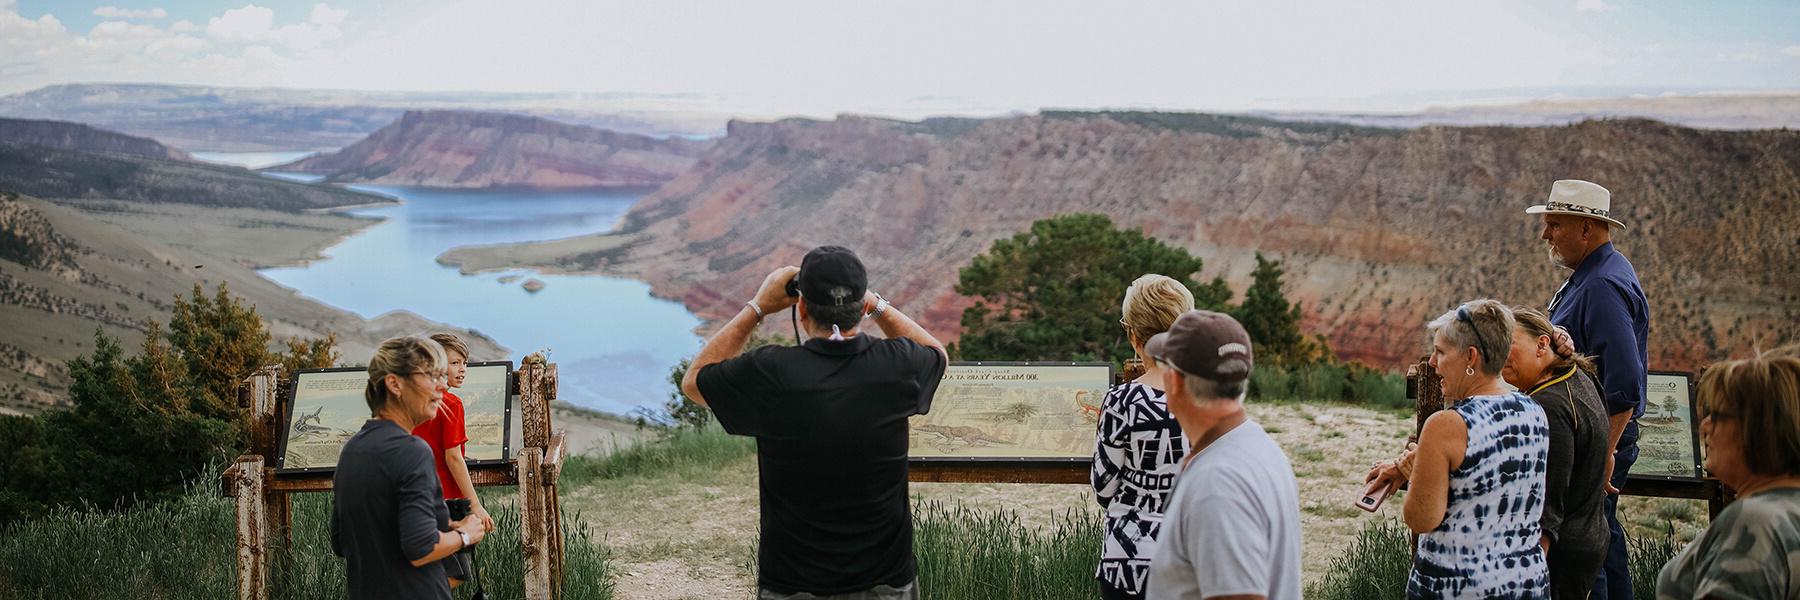 游客在火烈峡国家娱乐区欣赏风景